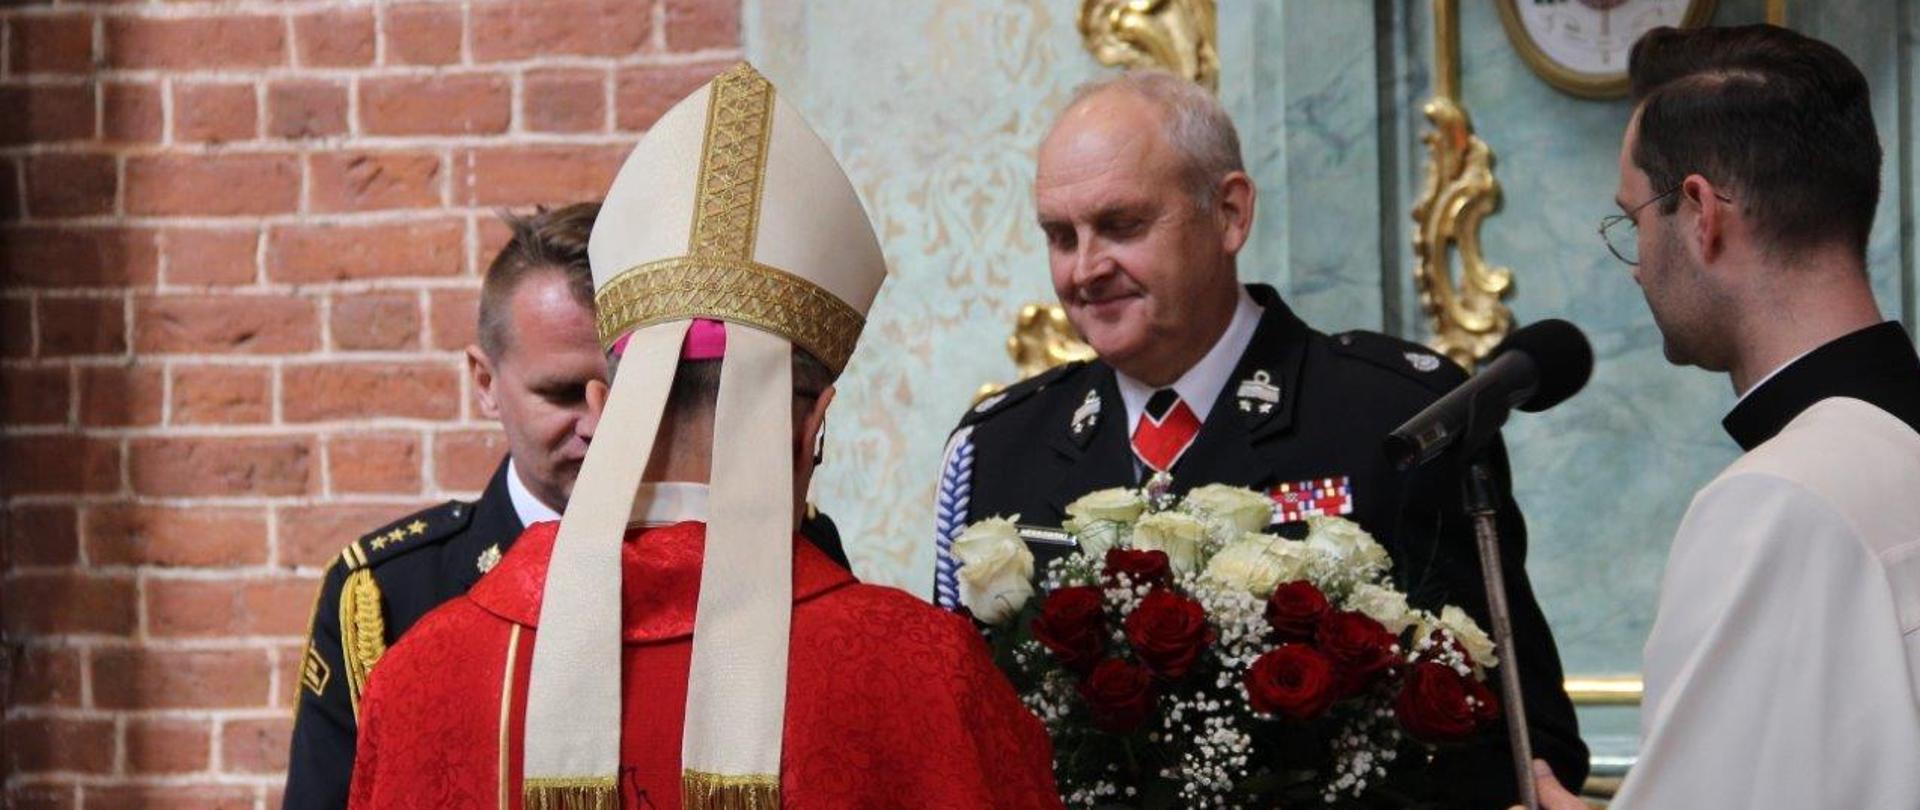 Oficer PSP i strażak OSP w mundurach galowych, stoją przed biskupem i wręczają upominki w podziękowaniu za eucharystię. Strażak z prawej strony trzyma kwiaty biało-czerwone, strażak z lewej statuetkę świętego Floroana.